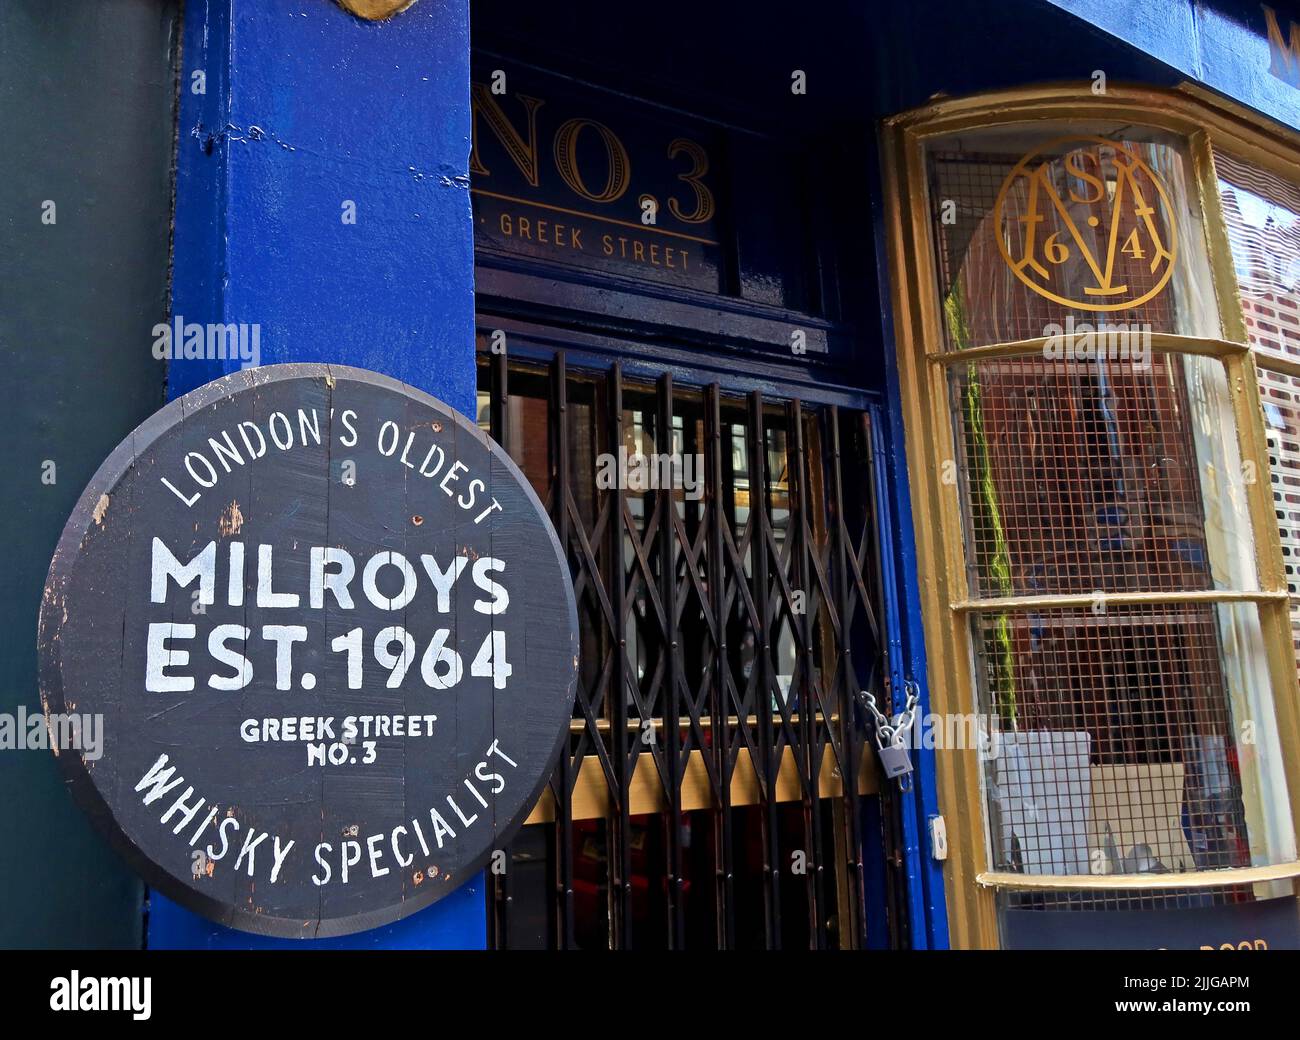 Milroys, le plus ancien Whisky Specialist de Londres, est 1964, Milroys Whisky Shop , 3 Greek St, Londres, Angleterre, Royaume-Uni, W1D 4NX Banque D'Images